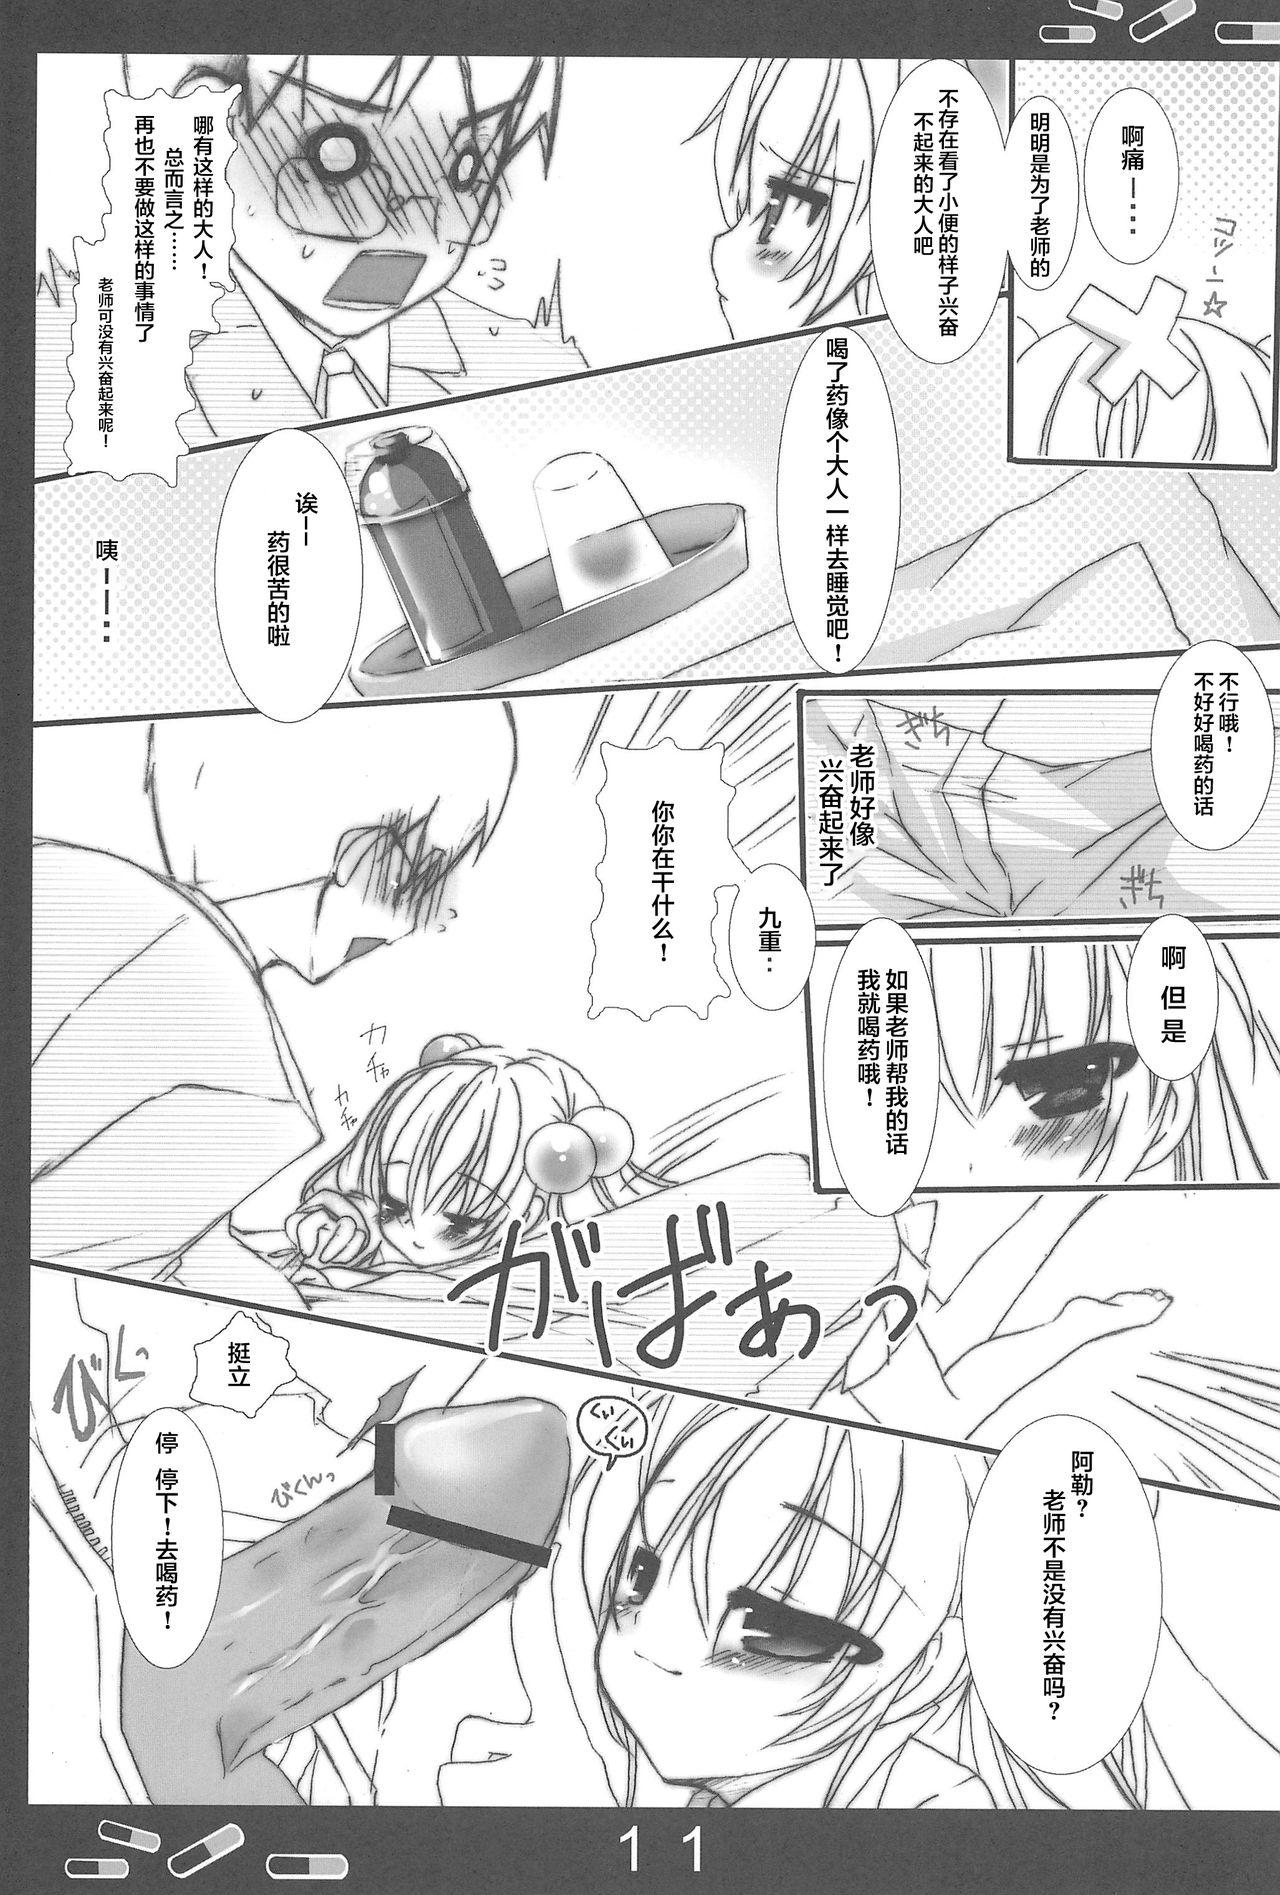 Shemale Onetsu no Jikan - Kodomo no jikan Gostosas - Page 12